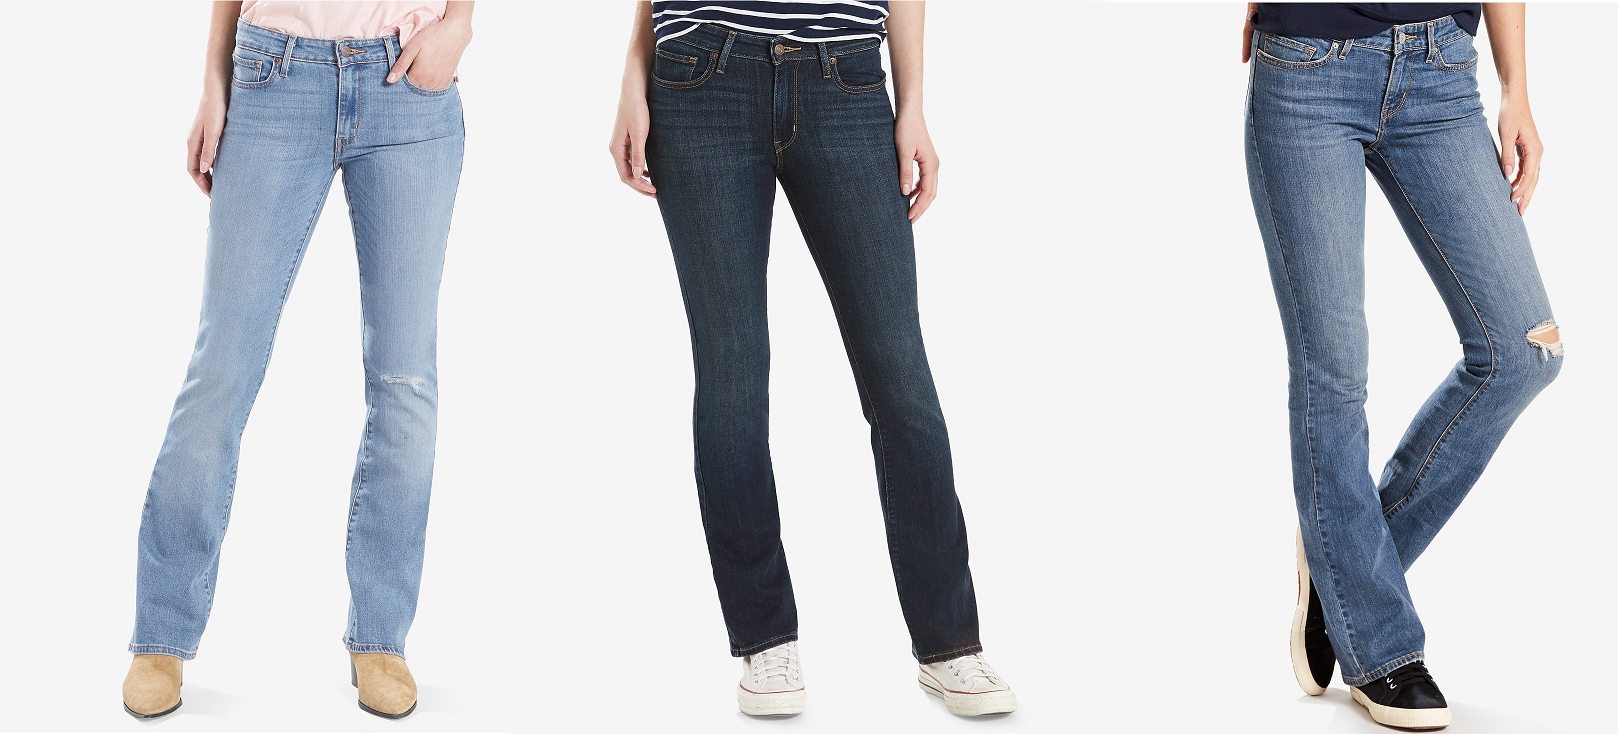 levis jeans sale macy's